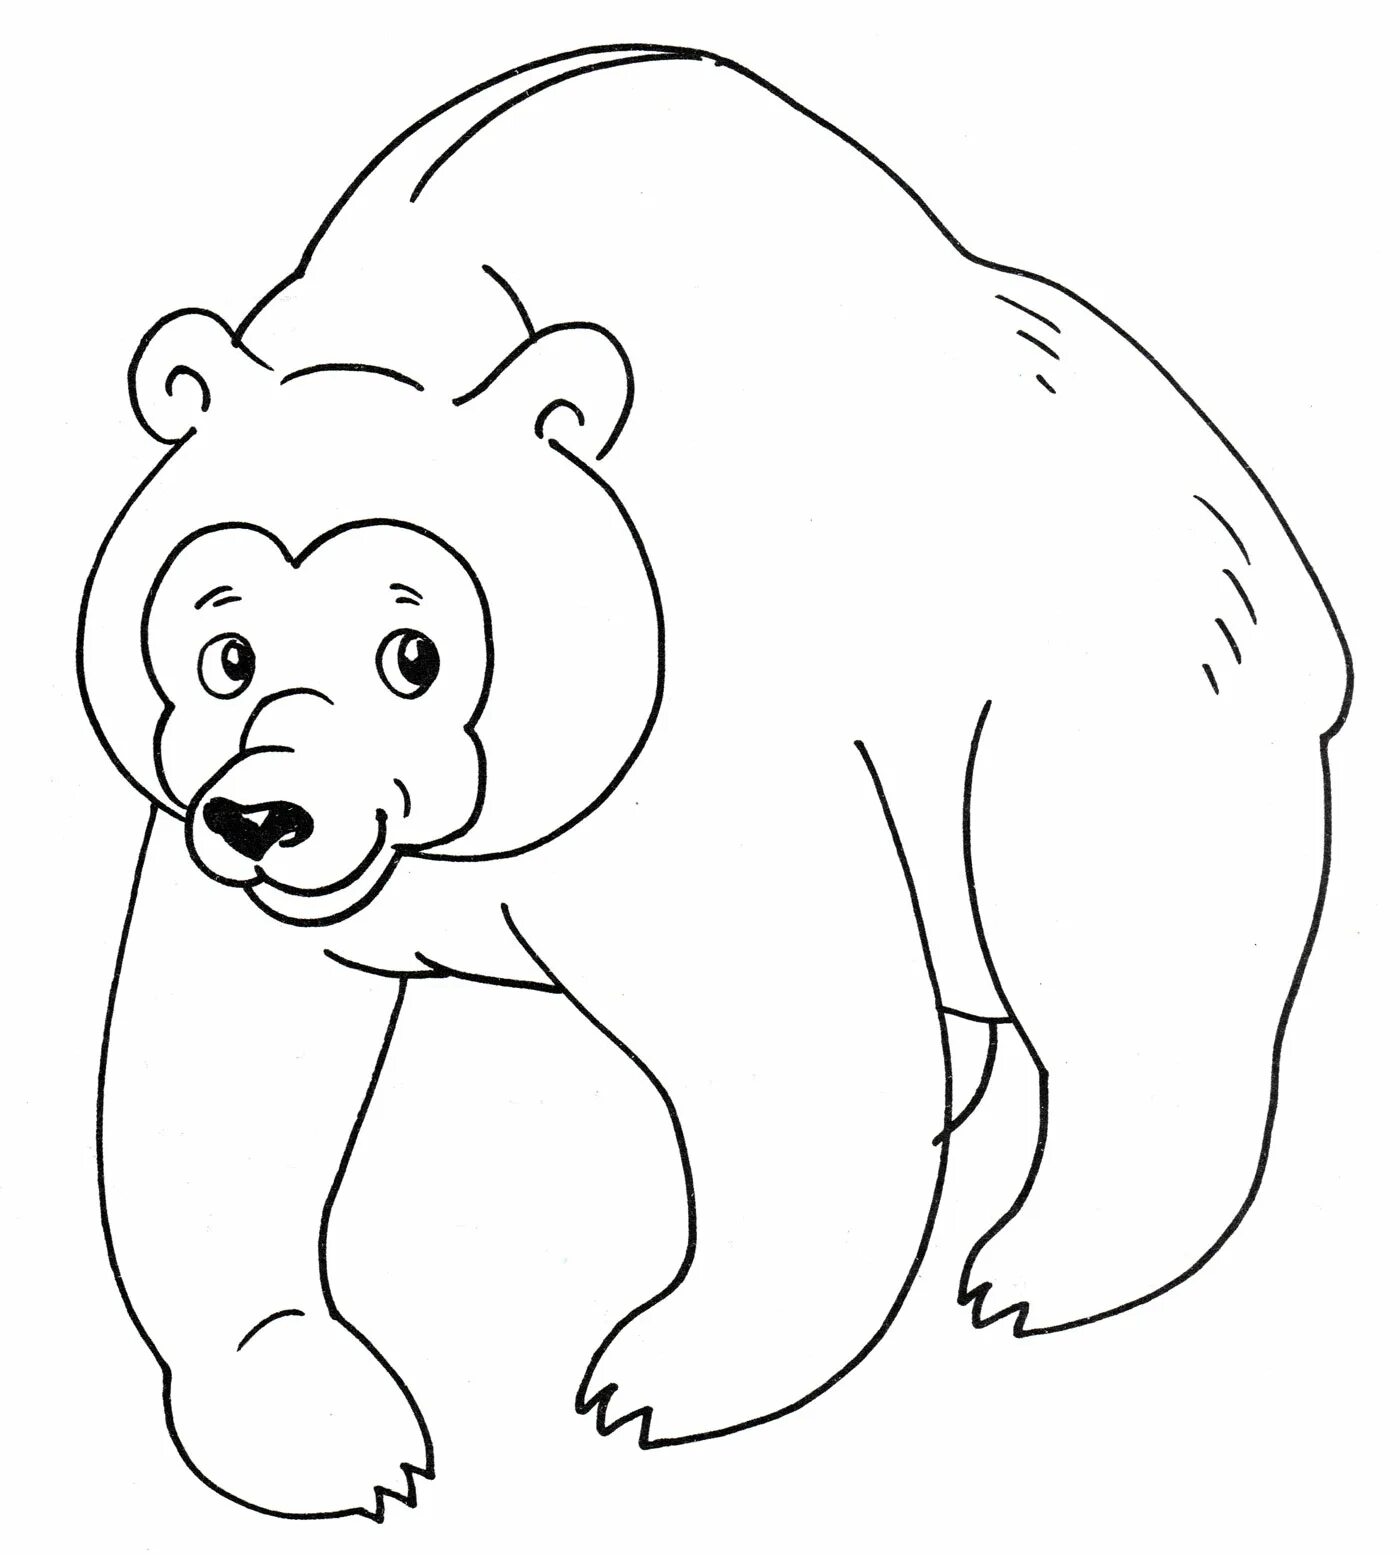 Раскраска медведь для детей 2 3 лет. Медведь раскраска. Медведь раскраска для детей. Медведь рисунок. Медведь рисунок для детей раскраска.